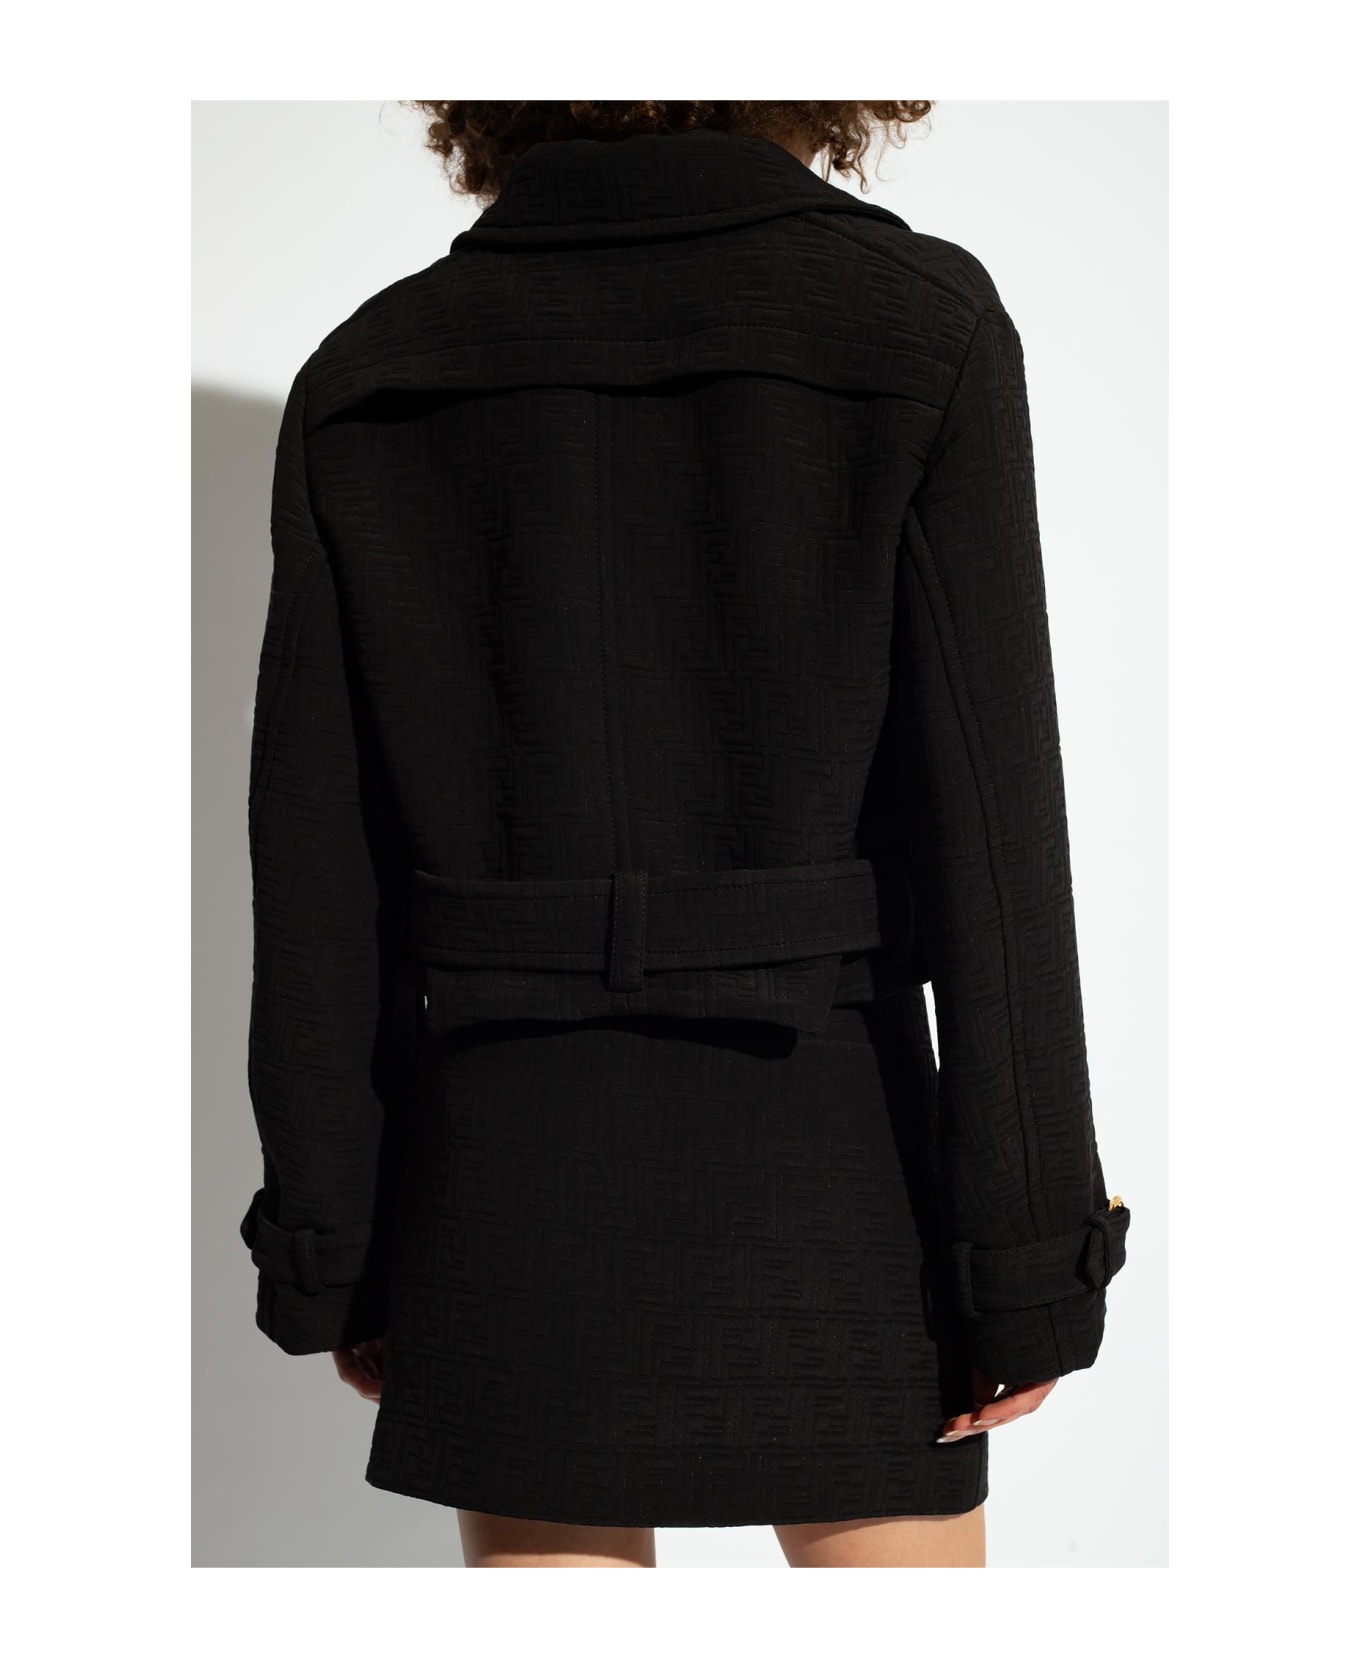 Fendi Jacket With Monogram - Black